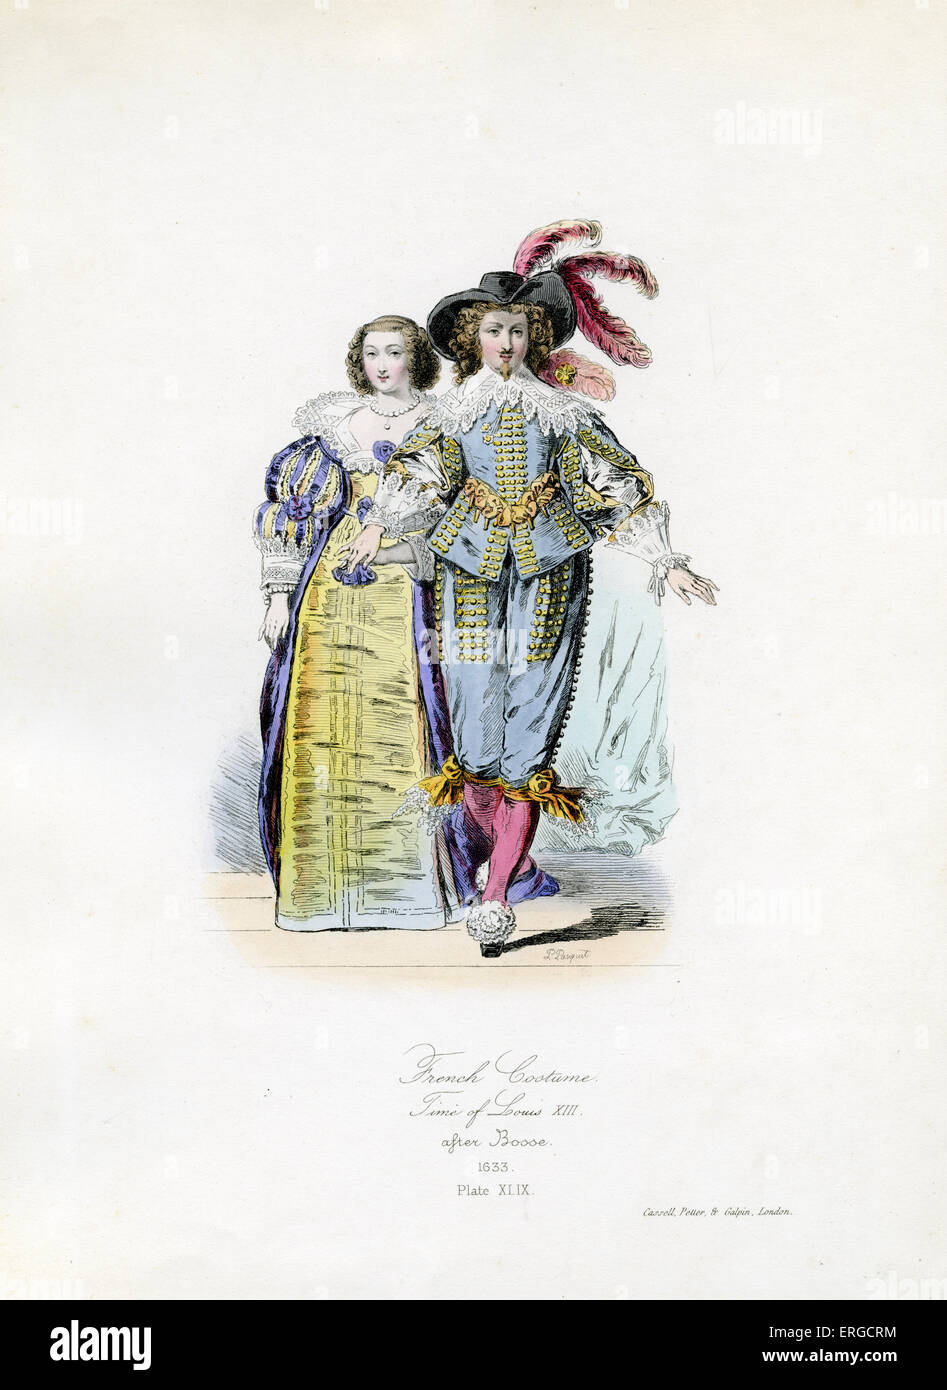 Costume de cour sous Louis XIII. Court costume under Louis XIII.